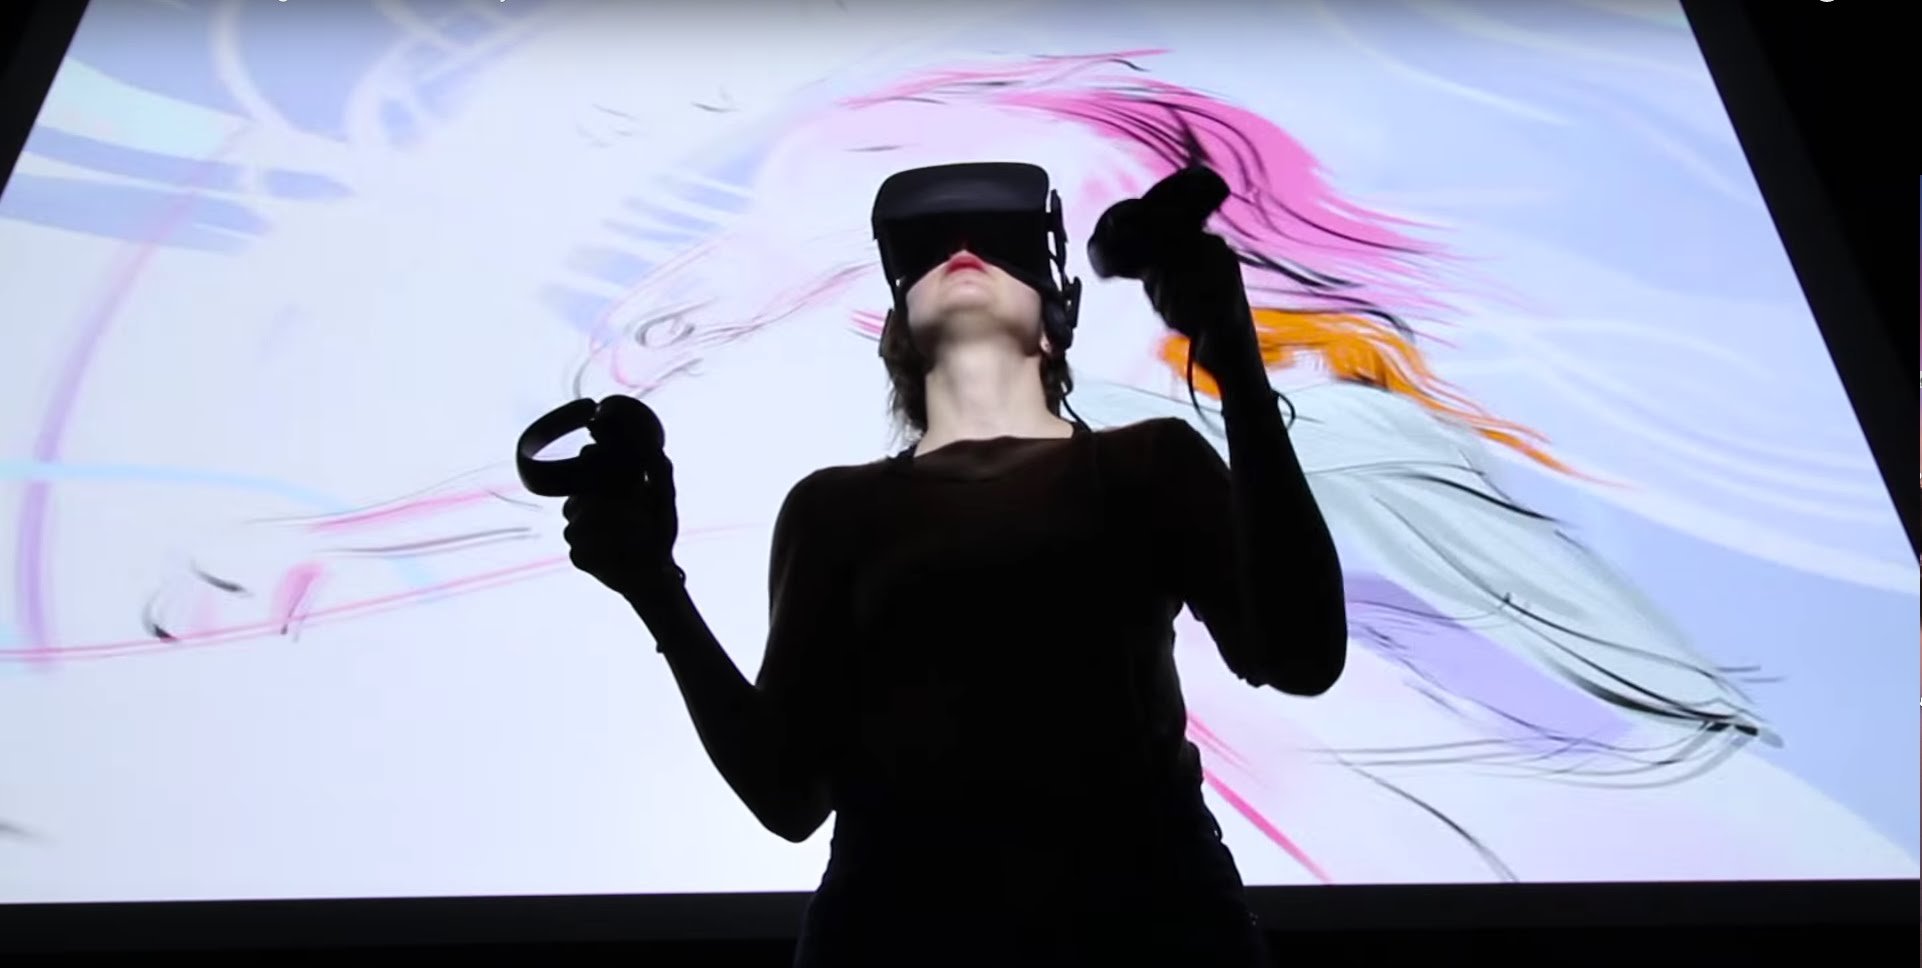 Программа для VR рисования Quill выйдет бесплатно